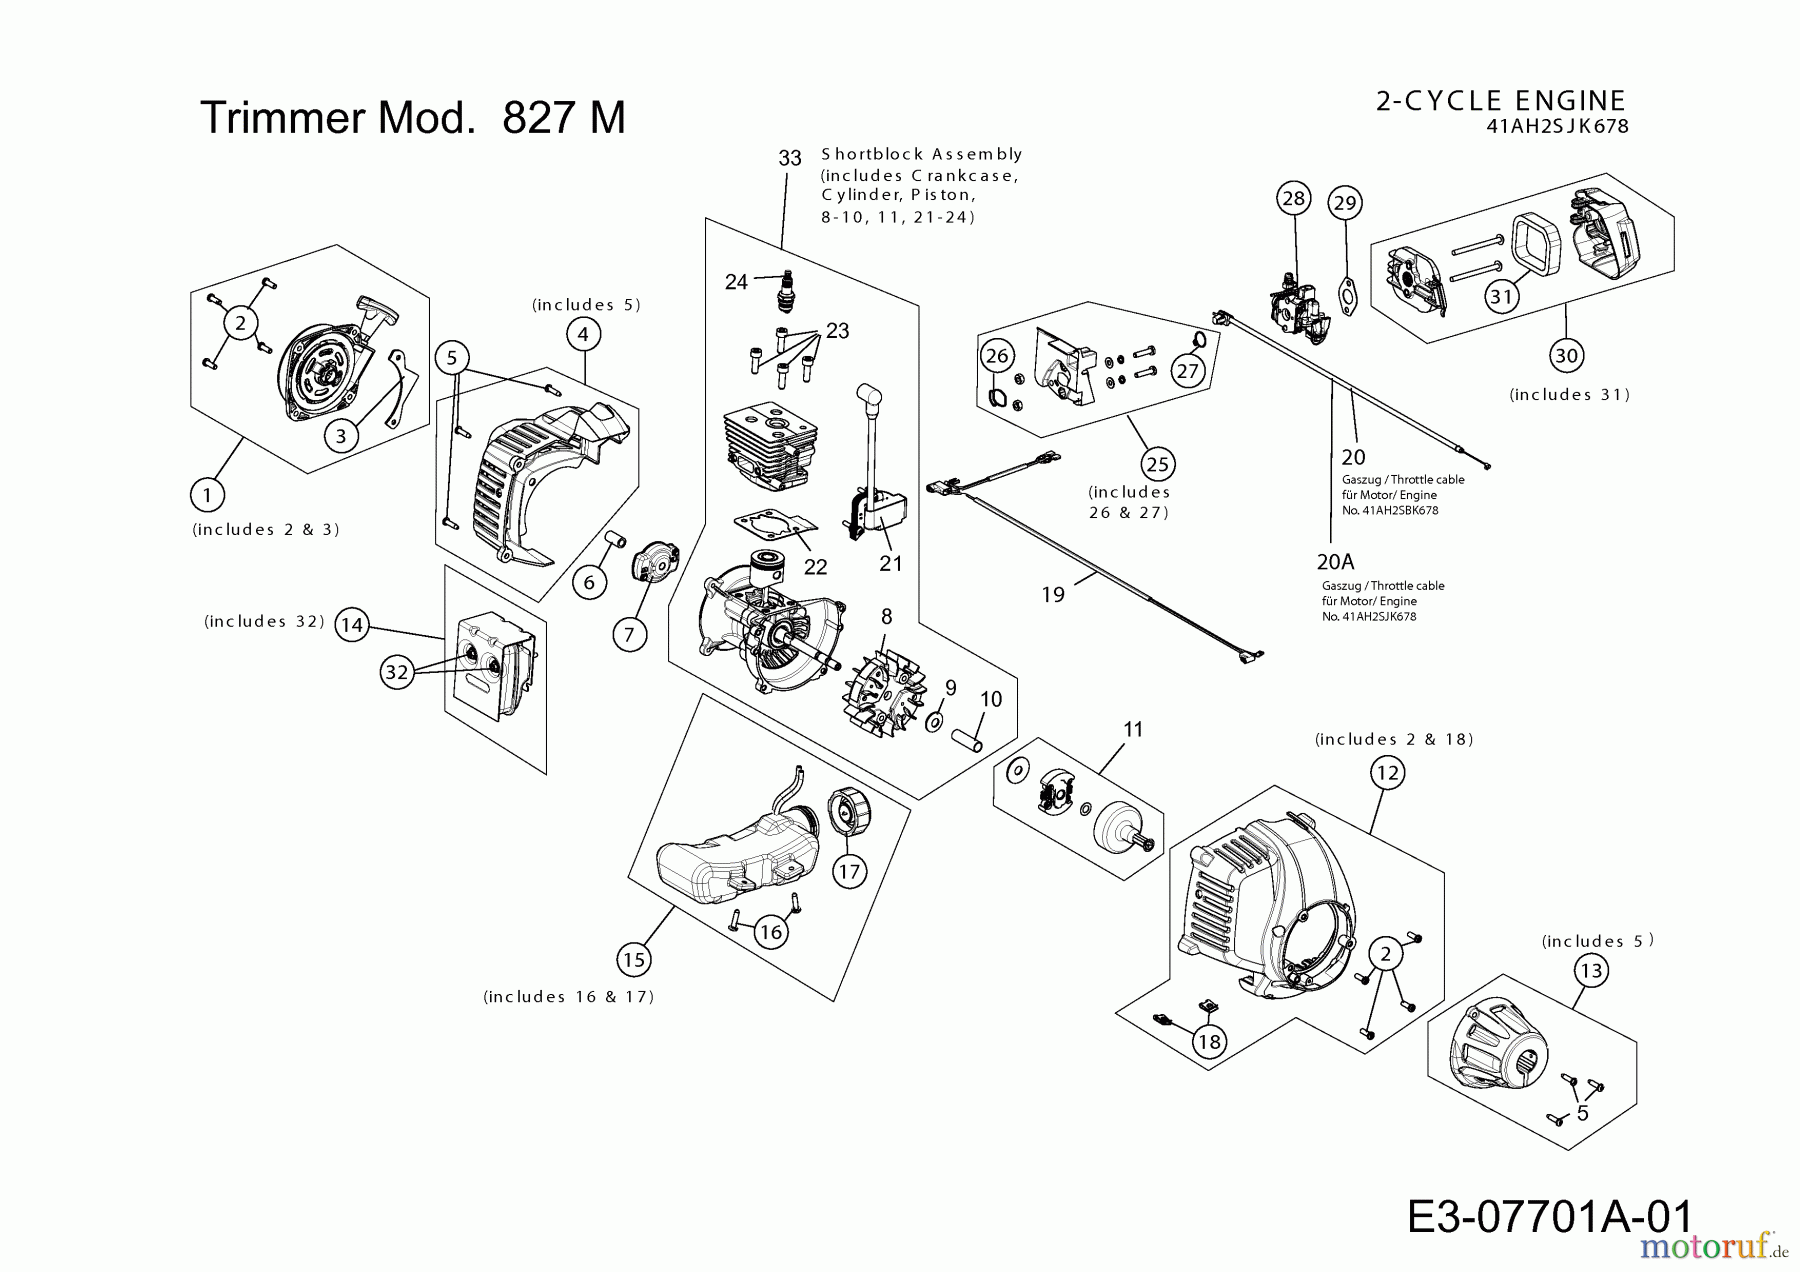  MTD Motorsensen 827 M 41AD7VT-678  (2013) Motor